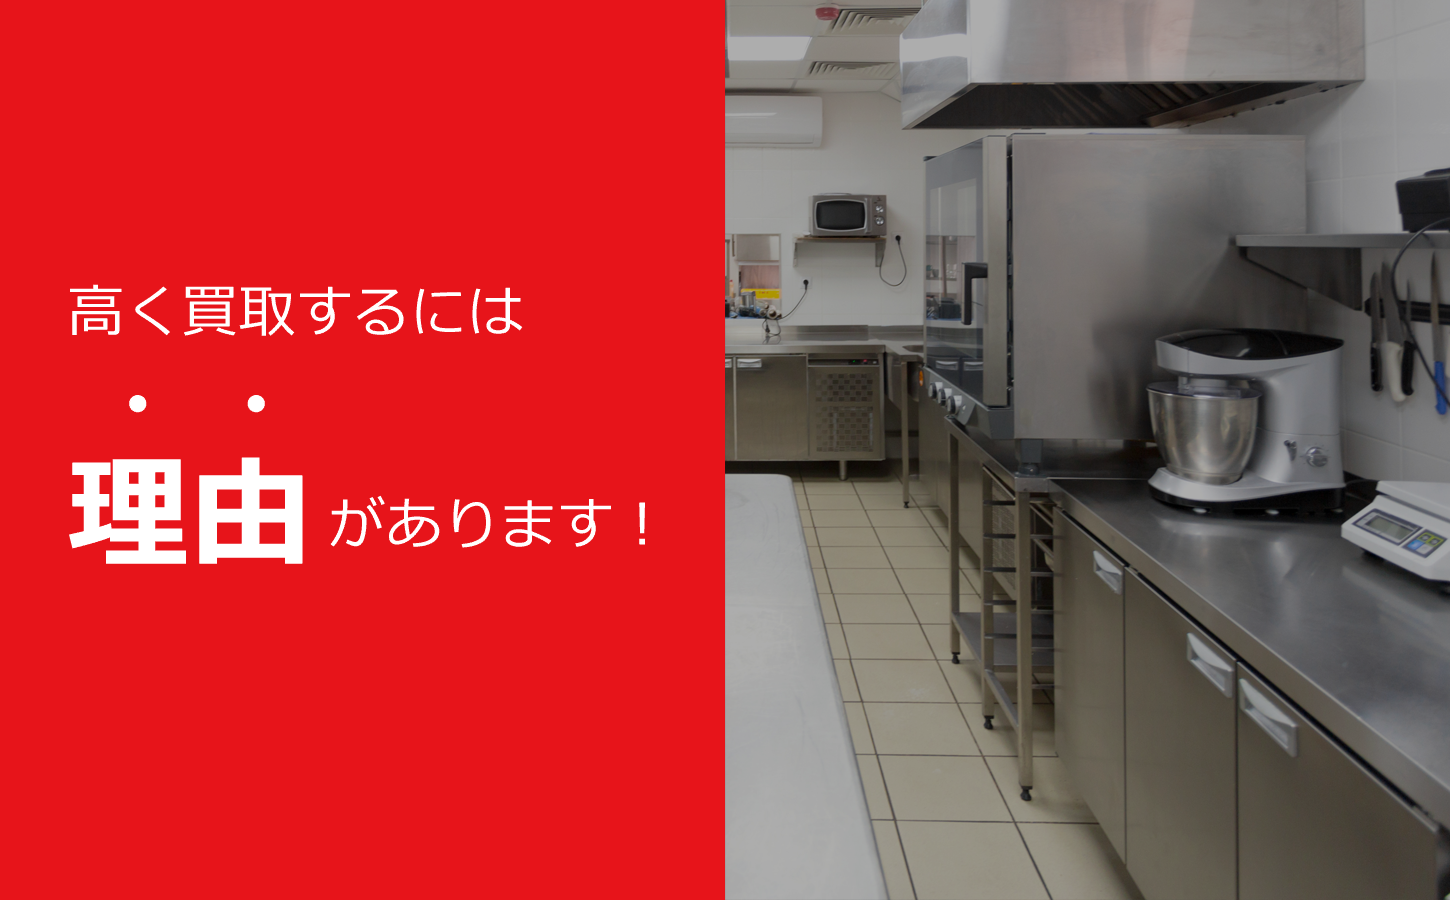 名古屋・愛知県で厨房機器や店舗用品を出張買取するリサイクルショップ